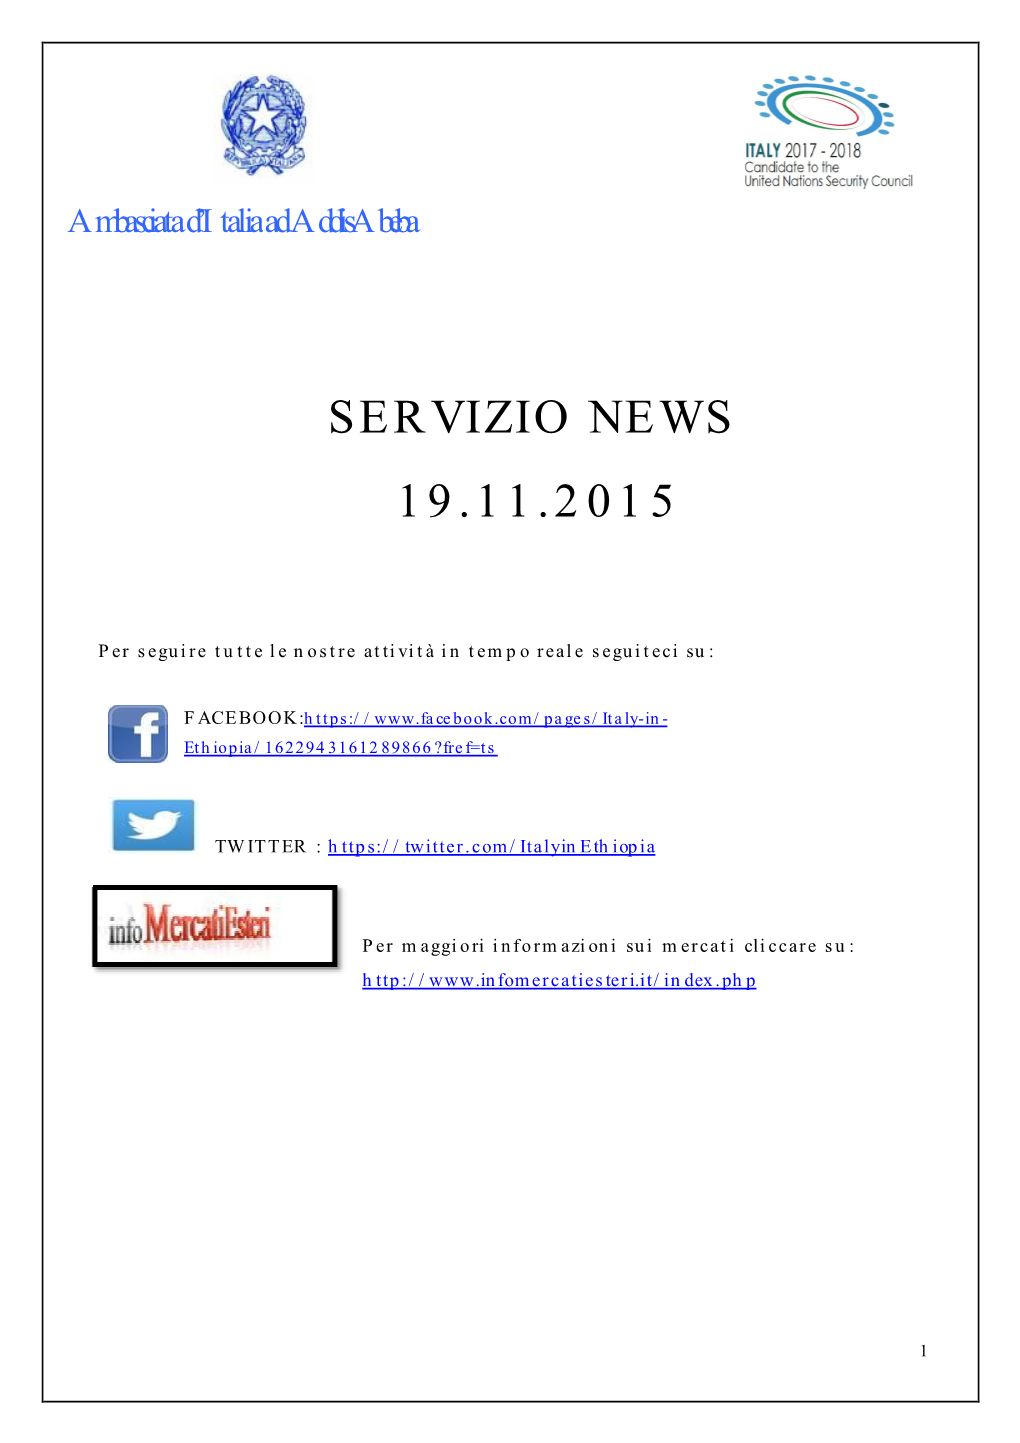 Servizio News 19.11.2015